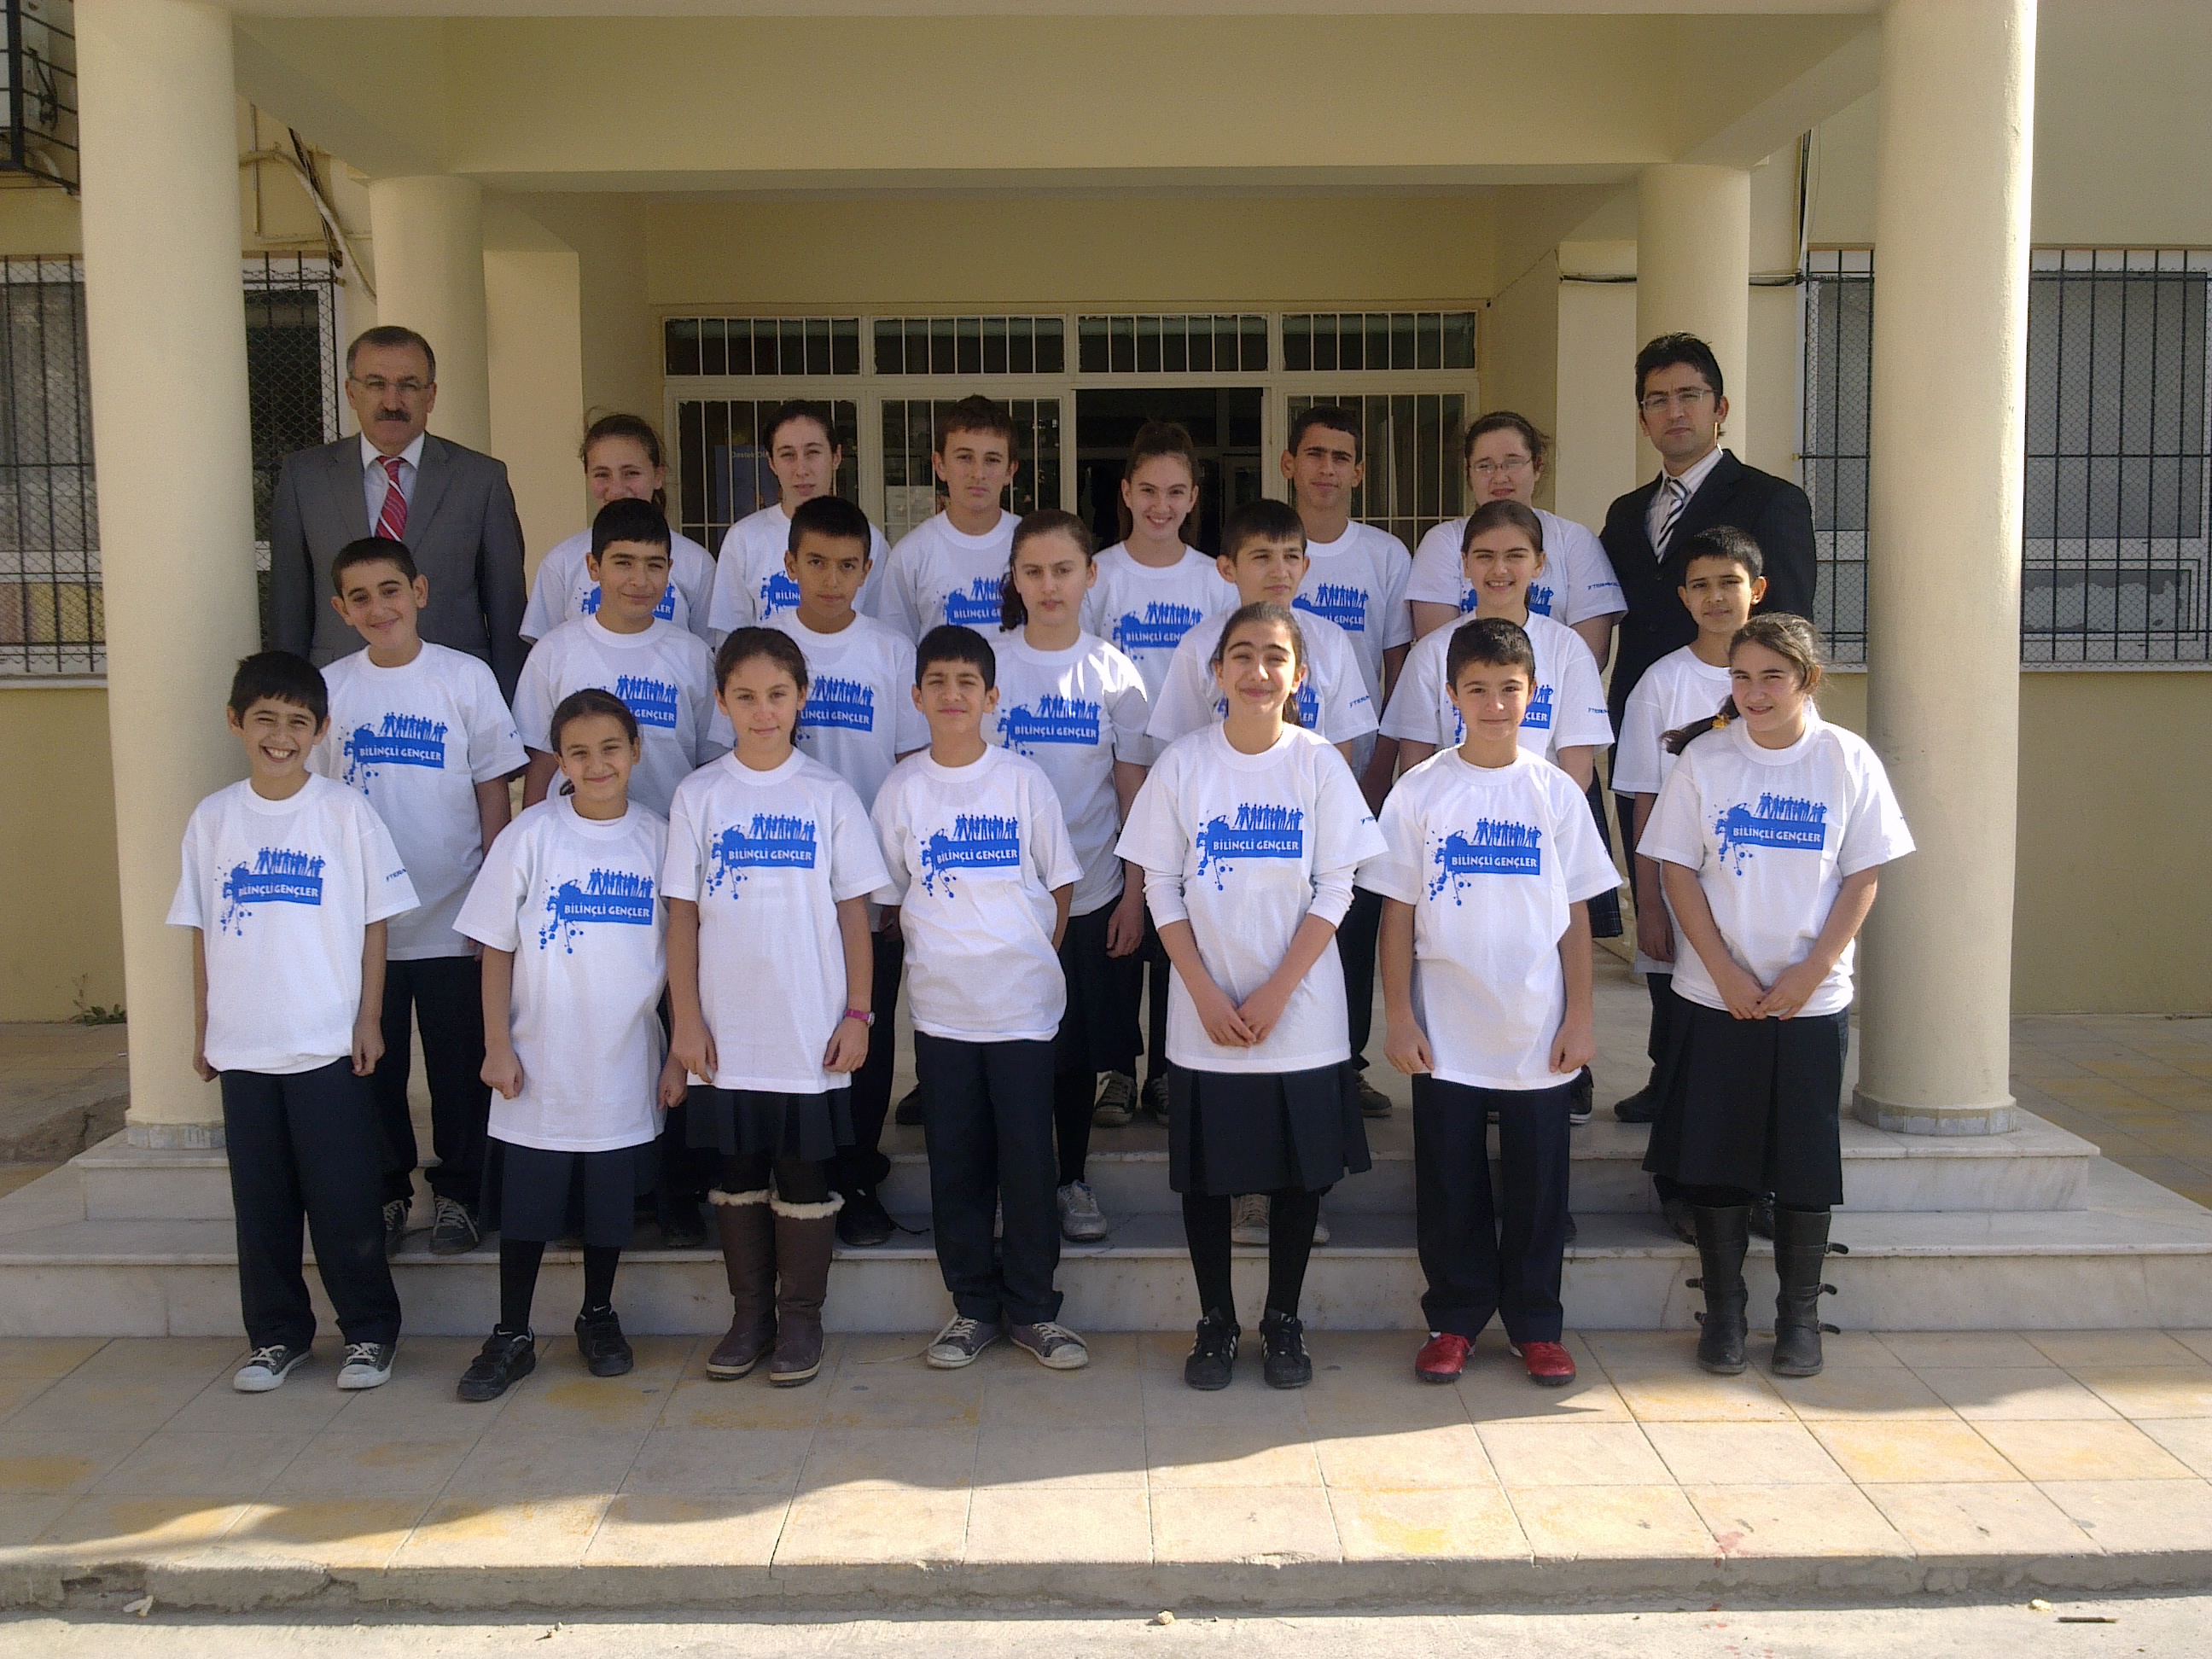 Bilinçli Gençler Derneği - Türkiye Bilinçli Gençlik Projesi - "HAYAT HERŞEYE RAĞMEN GÜZEL" - Engin Hayri Özmeriç İlköğretim Okulu - İZMİR